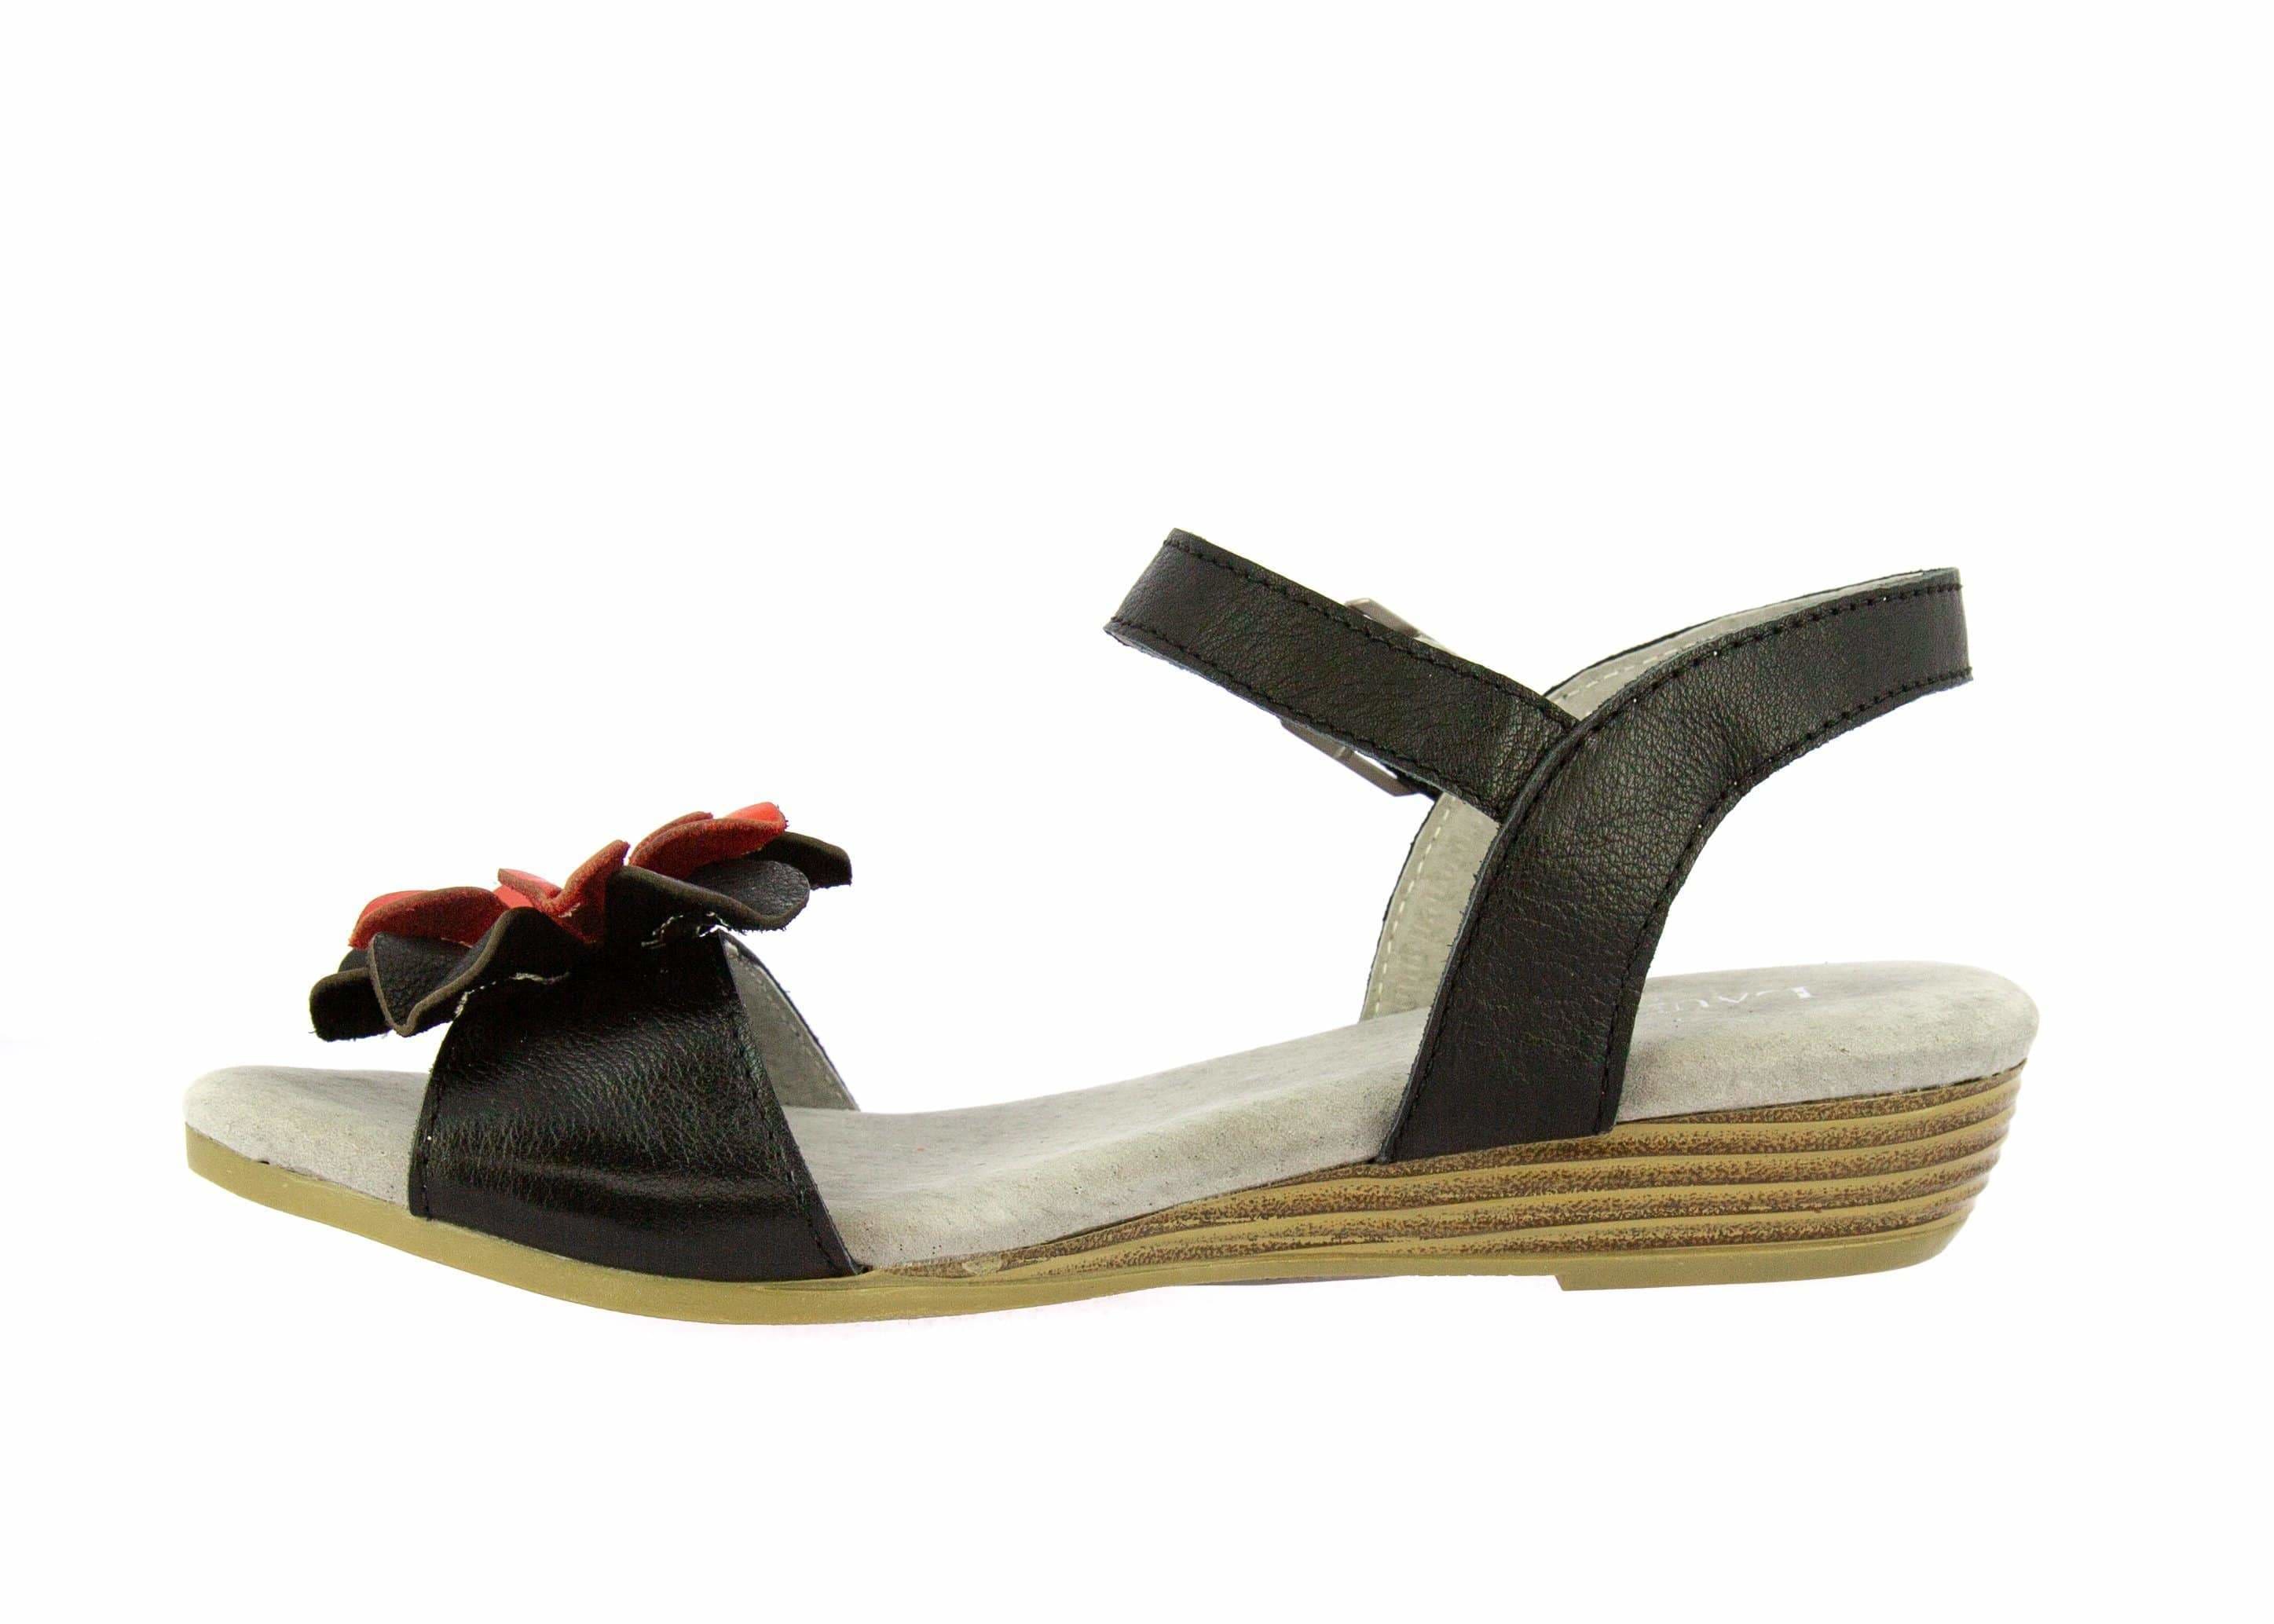 Shoe DUCNEO049 - Sandal